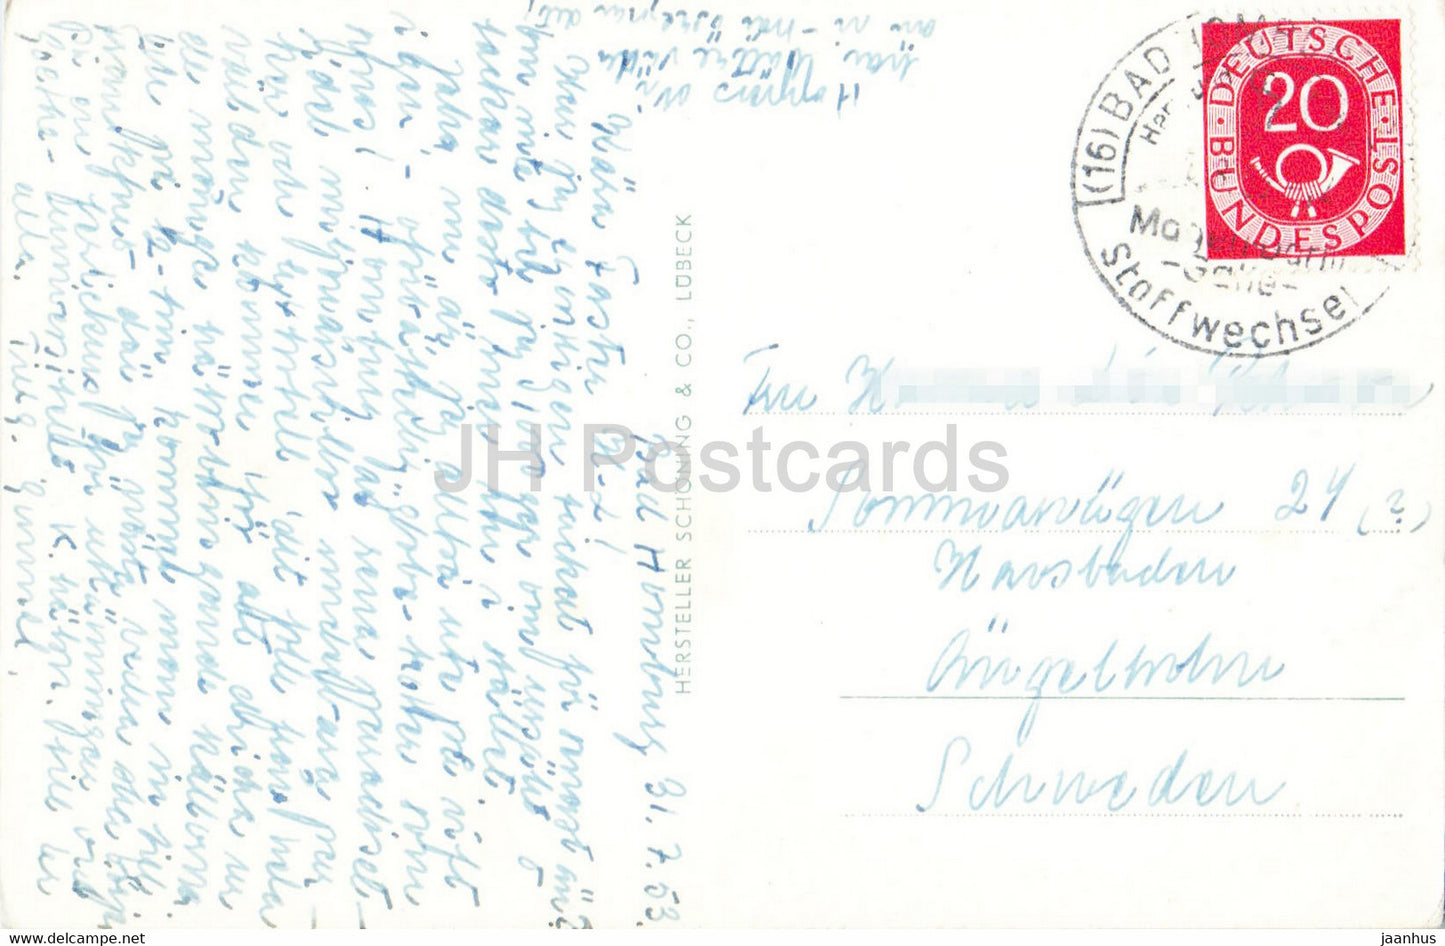 Bad Homburg – Schlosspark – Elisabethenbrunnen – Kurhaus – Spielcasino – altes Auto – alte Postkarte – 1953 – Deutschland – gebraucht